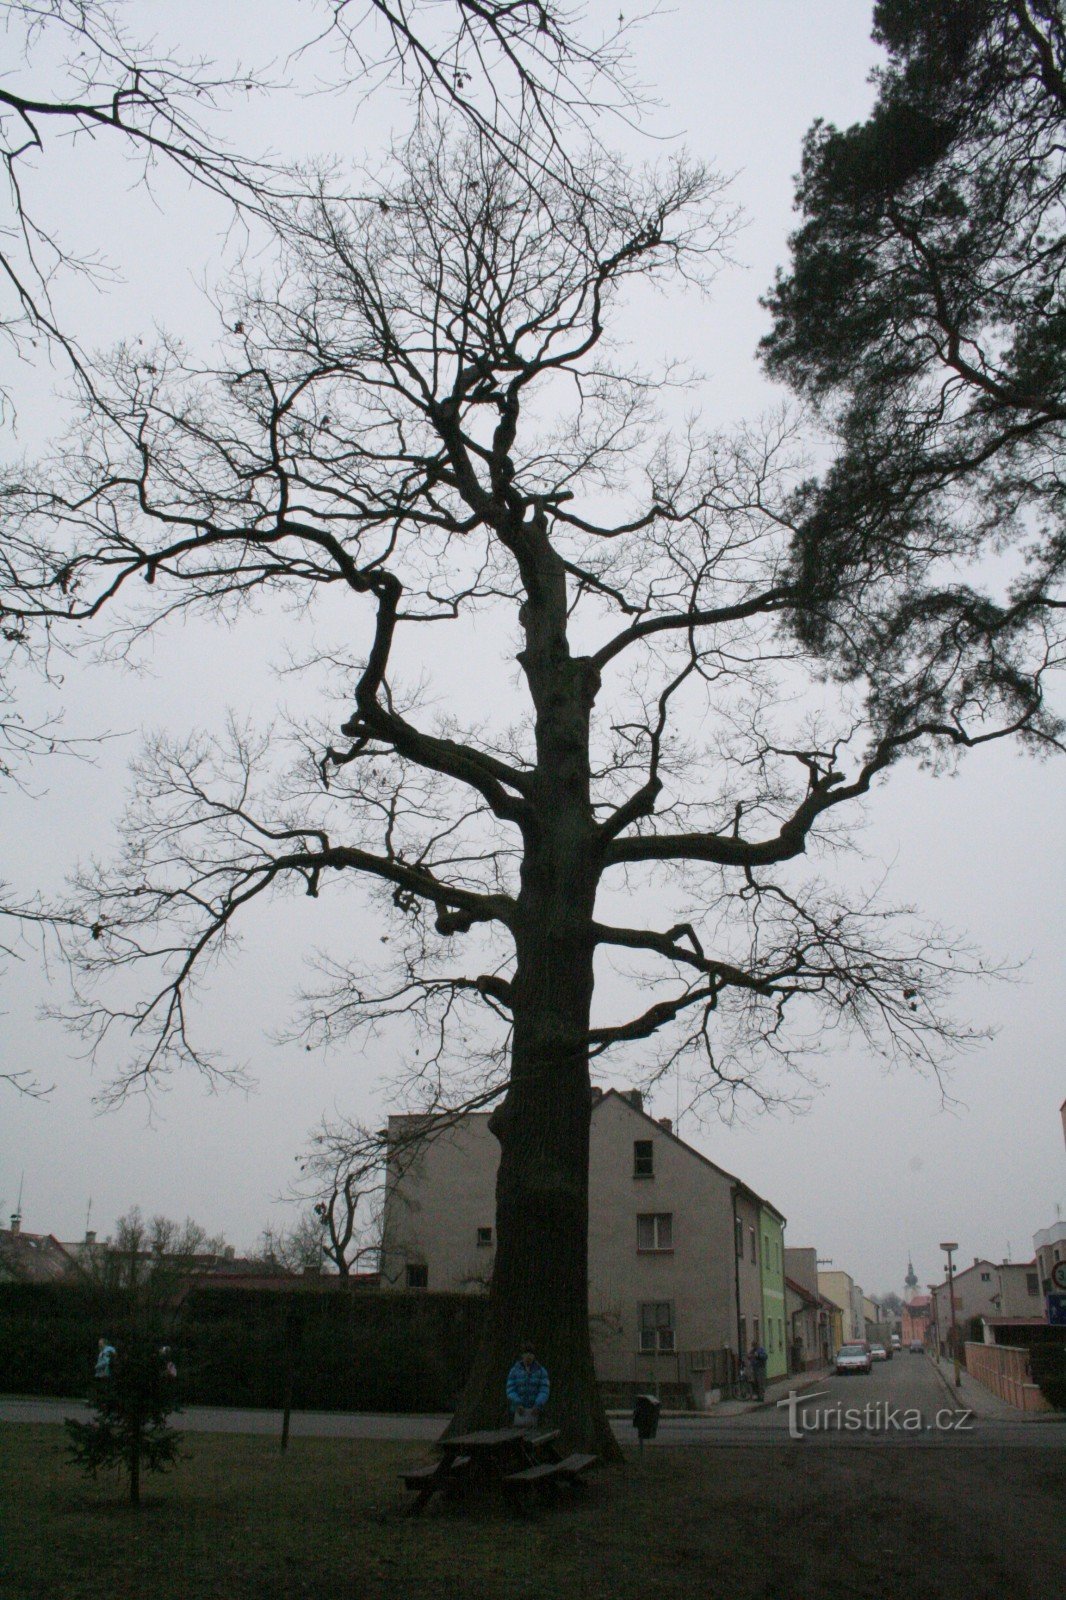 Stejarul memorial din Třebechovice